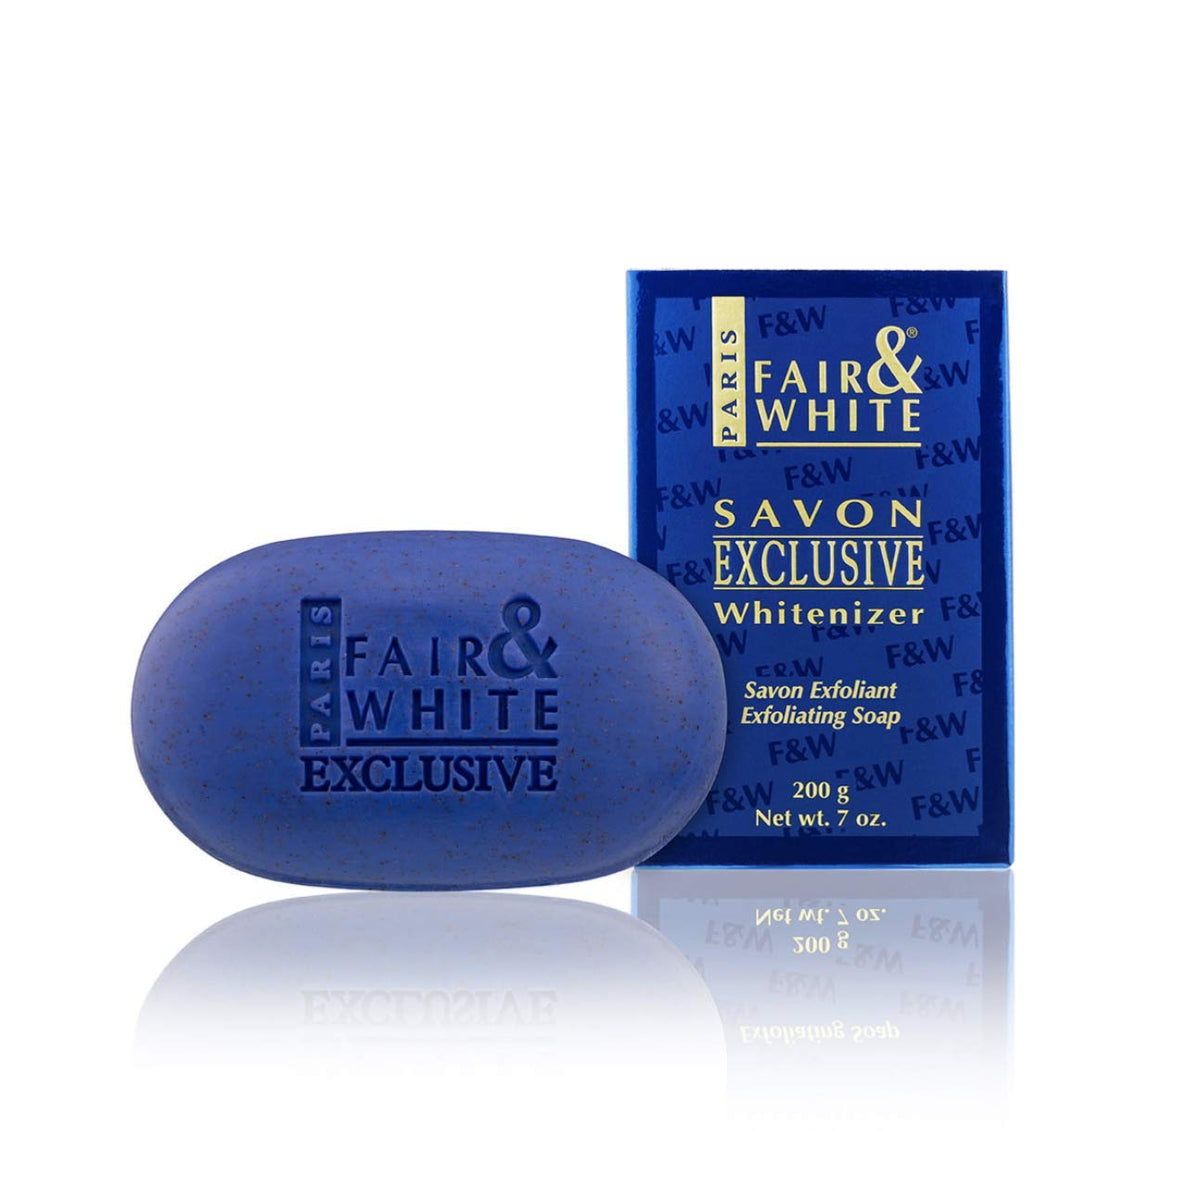 Fair & White Savon, Exclusive Whitenizer Exfoliating Soap, 7oz